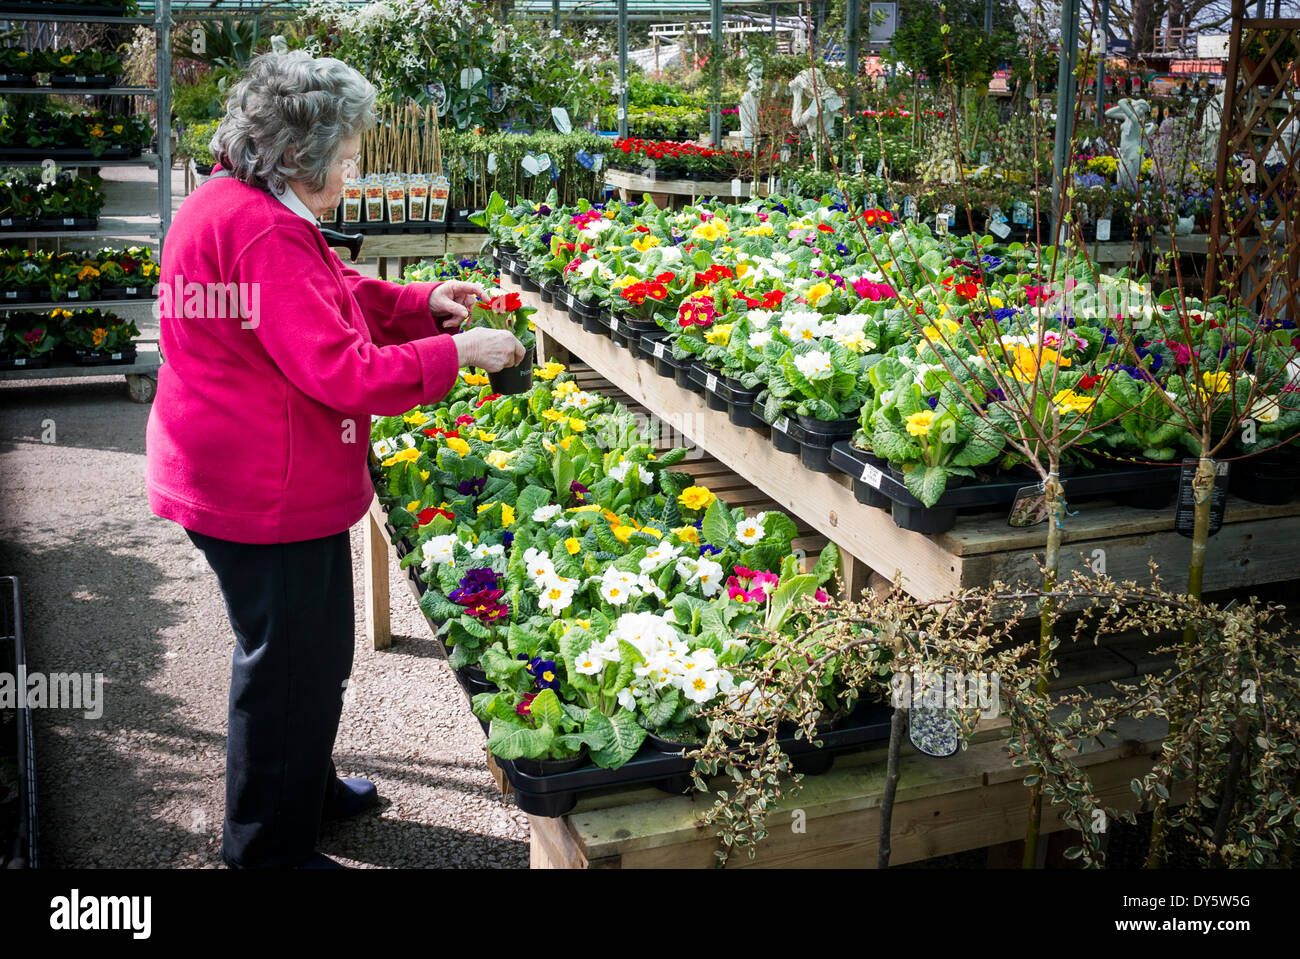 Cliente selecciona prímulas para comprar en el centro de un jardín inglés Foto de stock